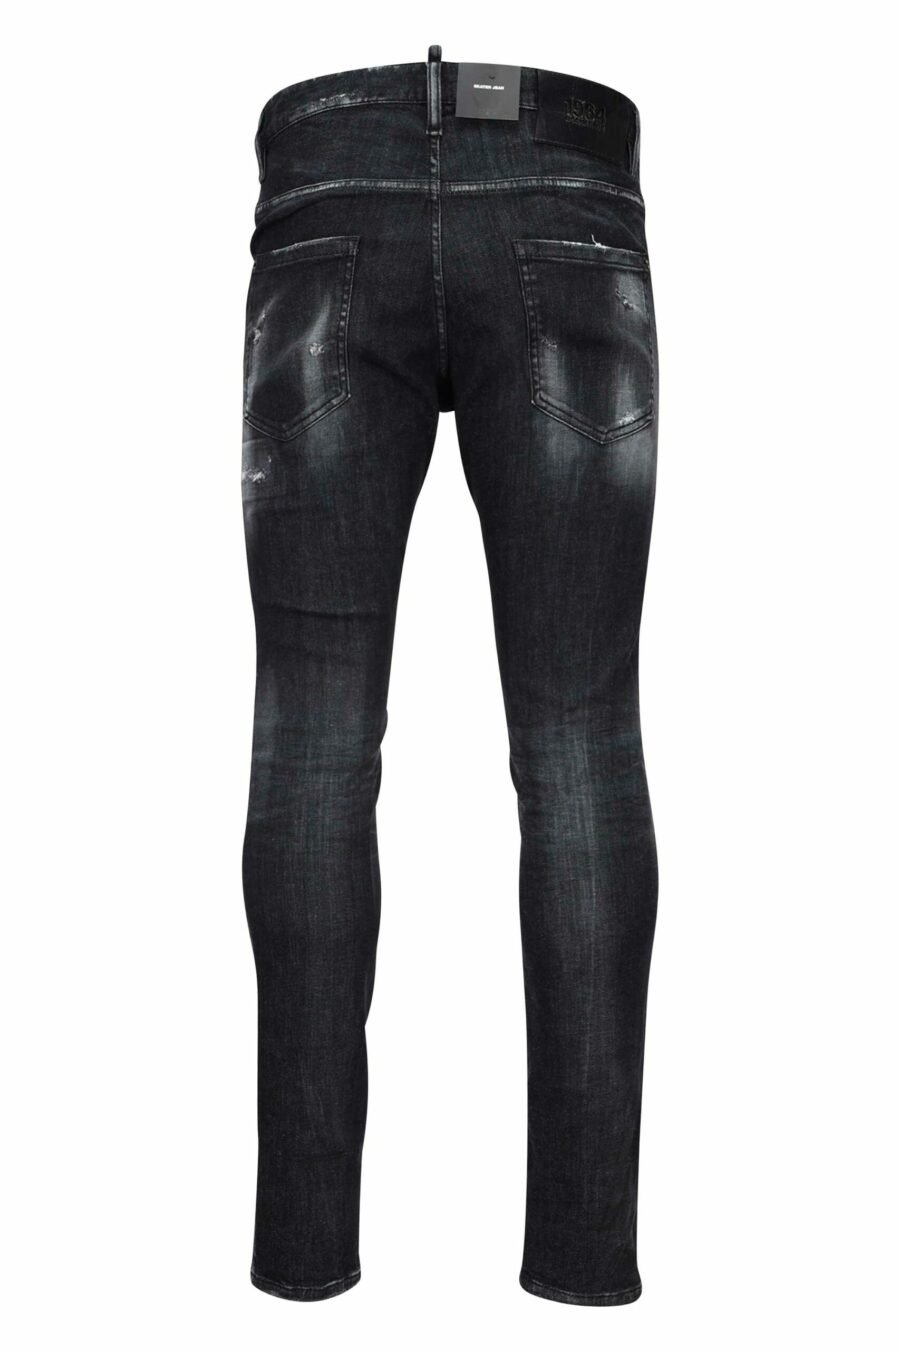 Skater-Jeans-Hose schwarz mit Rissen und semi-getragen - 8054148101411 2 skaliert